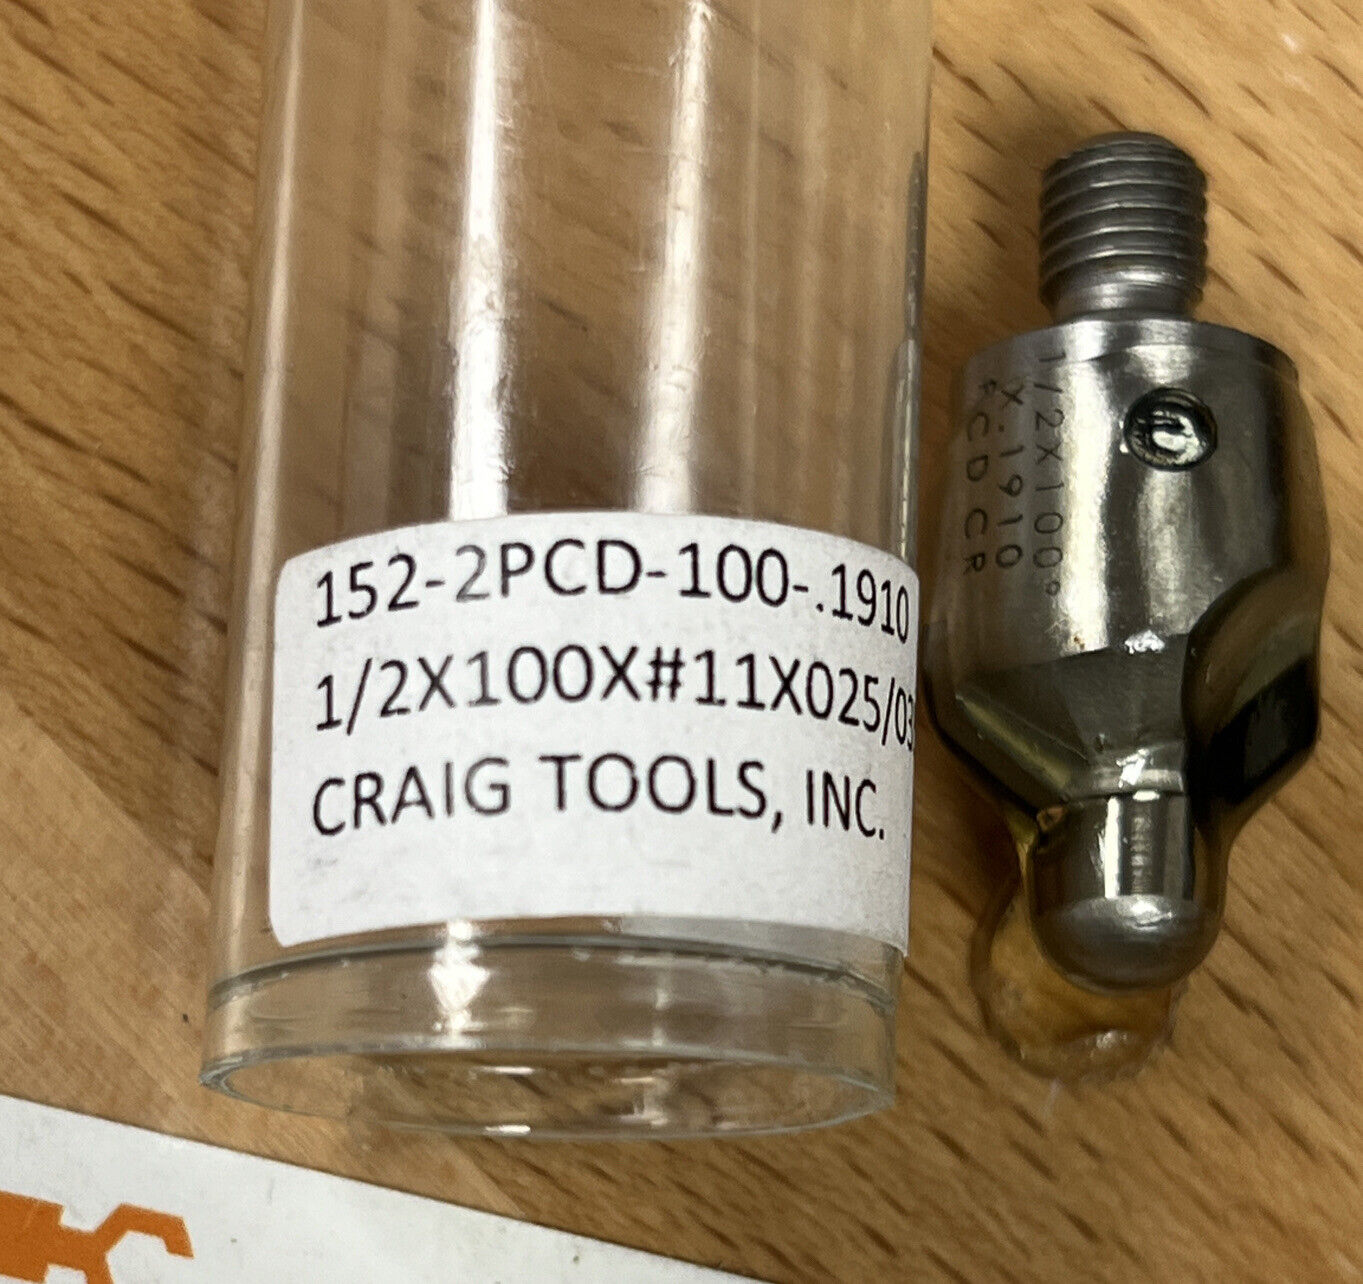 Craig Tools  152-2PCD-100-.1910 #11 2-Flute Countersink (GR131) - 0